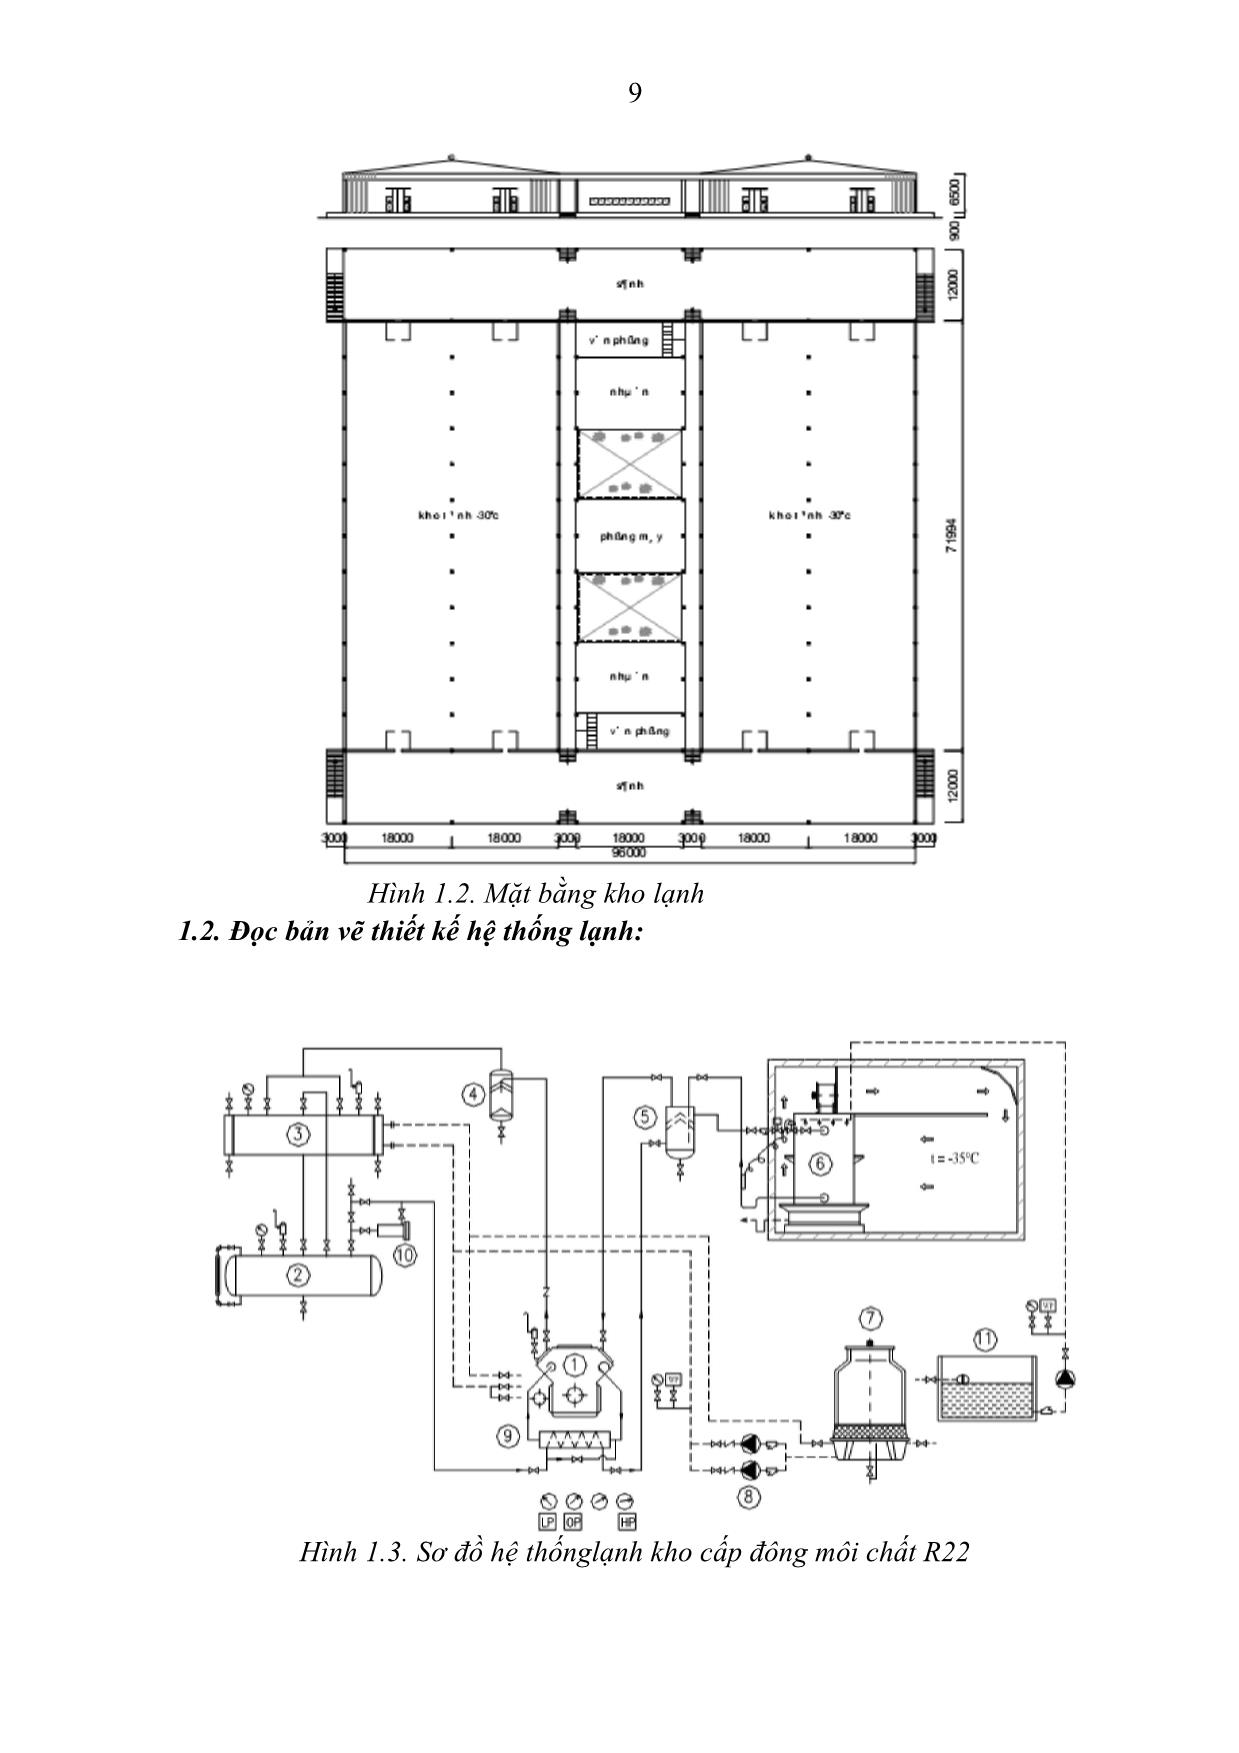 Giáo trình Mô đun Hệ thống máy lạnh công nghiệp - Kỹ thuật máy lạnh và điều hòa không khí trang 10